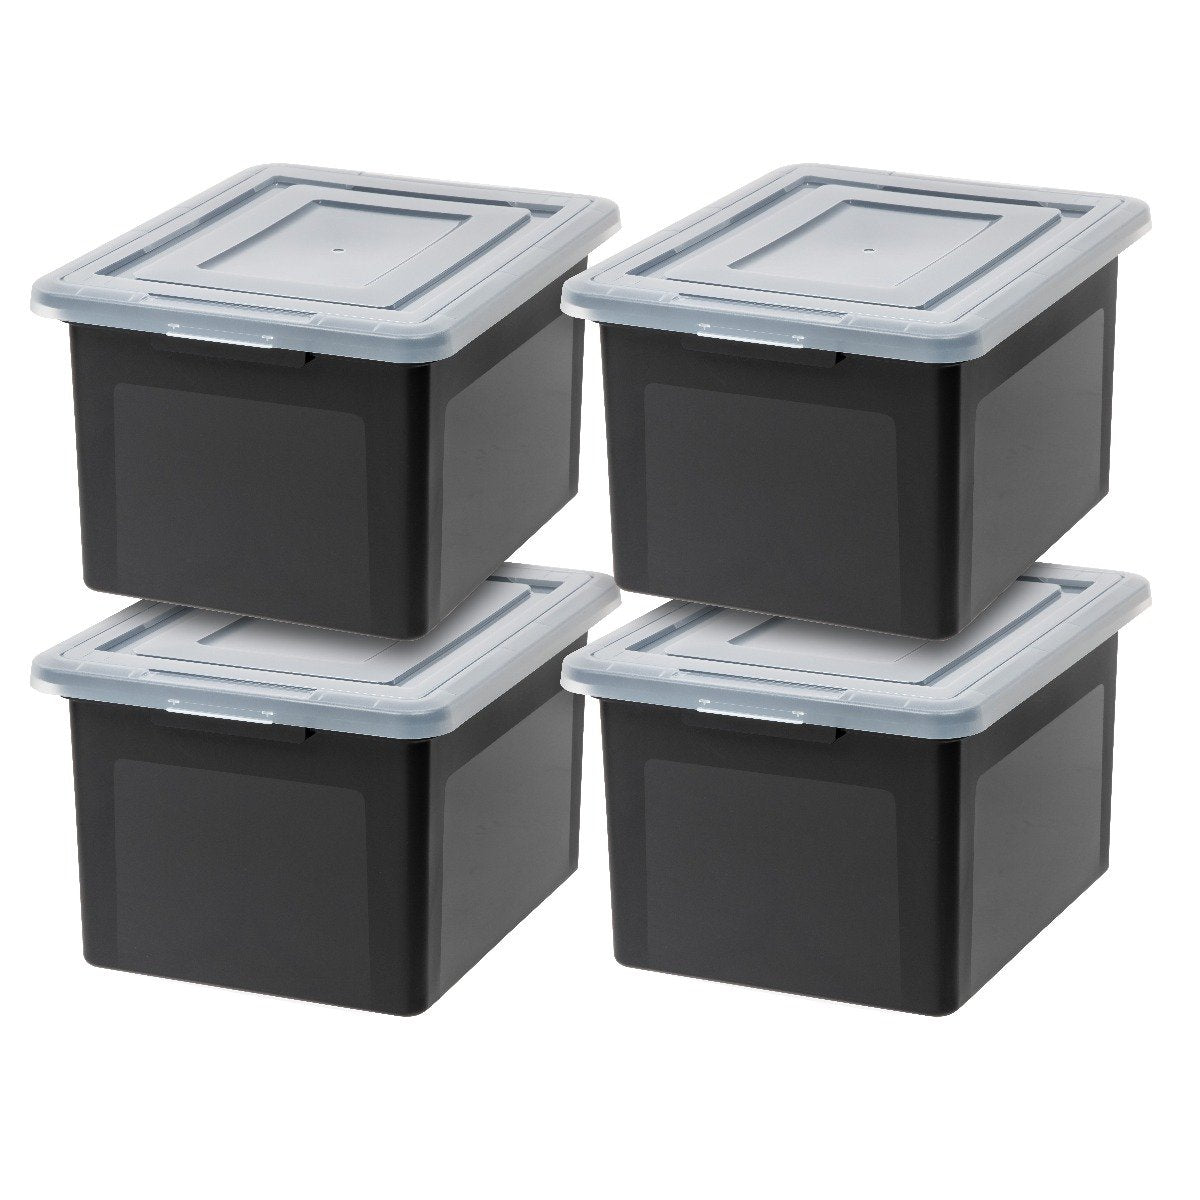 Iris USA Weatherpro Legal File Storage Box, Set of 3